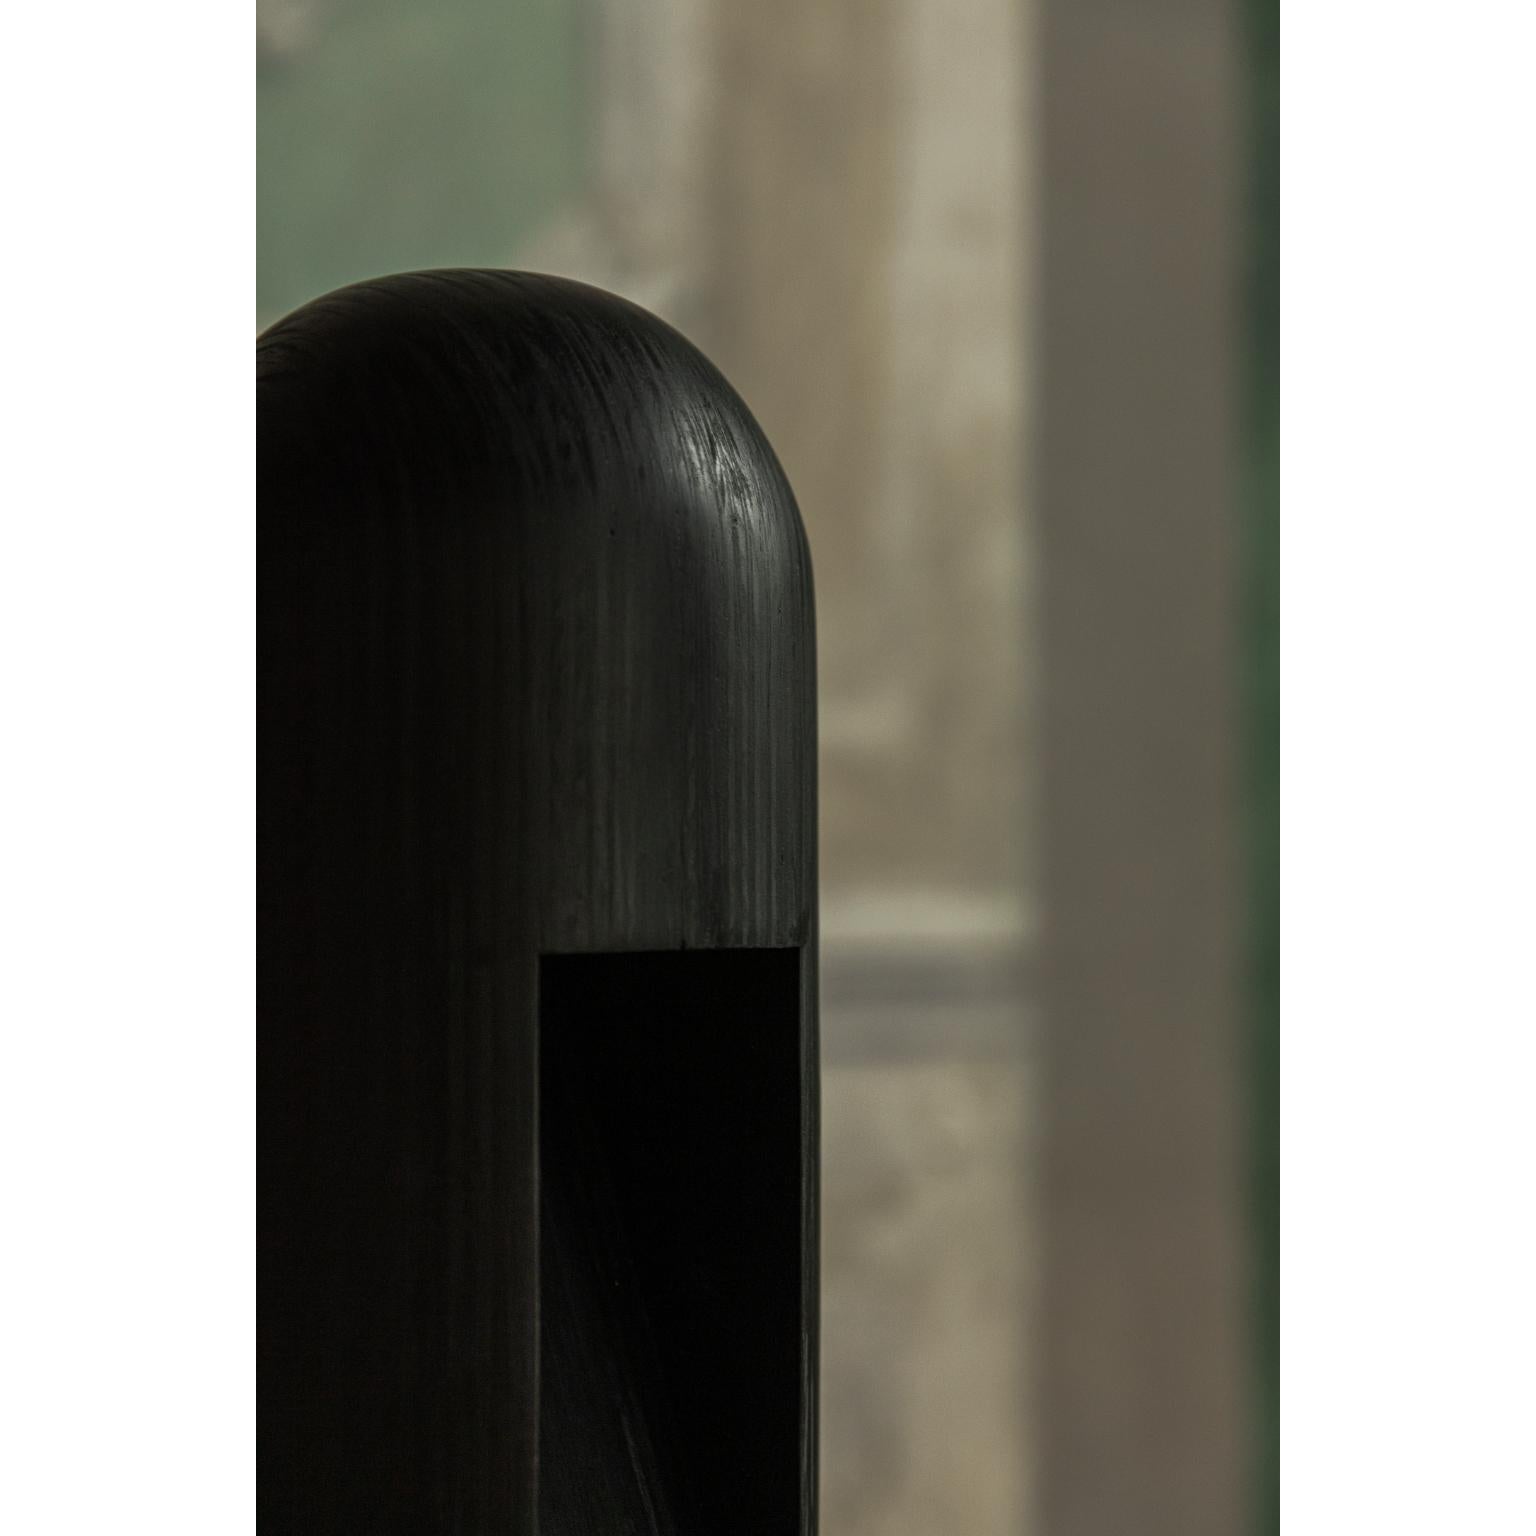 Lampe murale en contreplaqué de Rick Owens
2013
Dimensions : L 15 x l 15 x H 51 cm
Matériaux : Contreplaqué
Poids : 5.3 kg
Note : led 230v

Rick Owens est un créateur de mode et de mobilier originaire de Californie qui a développé un style unique